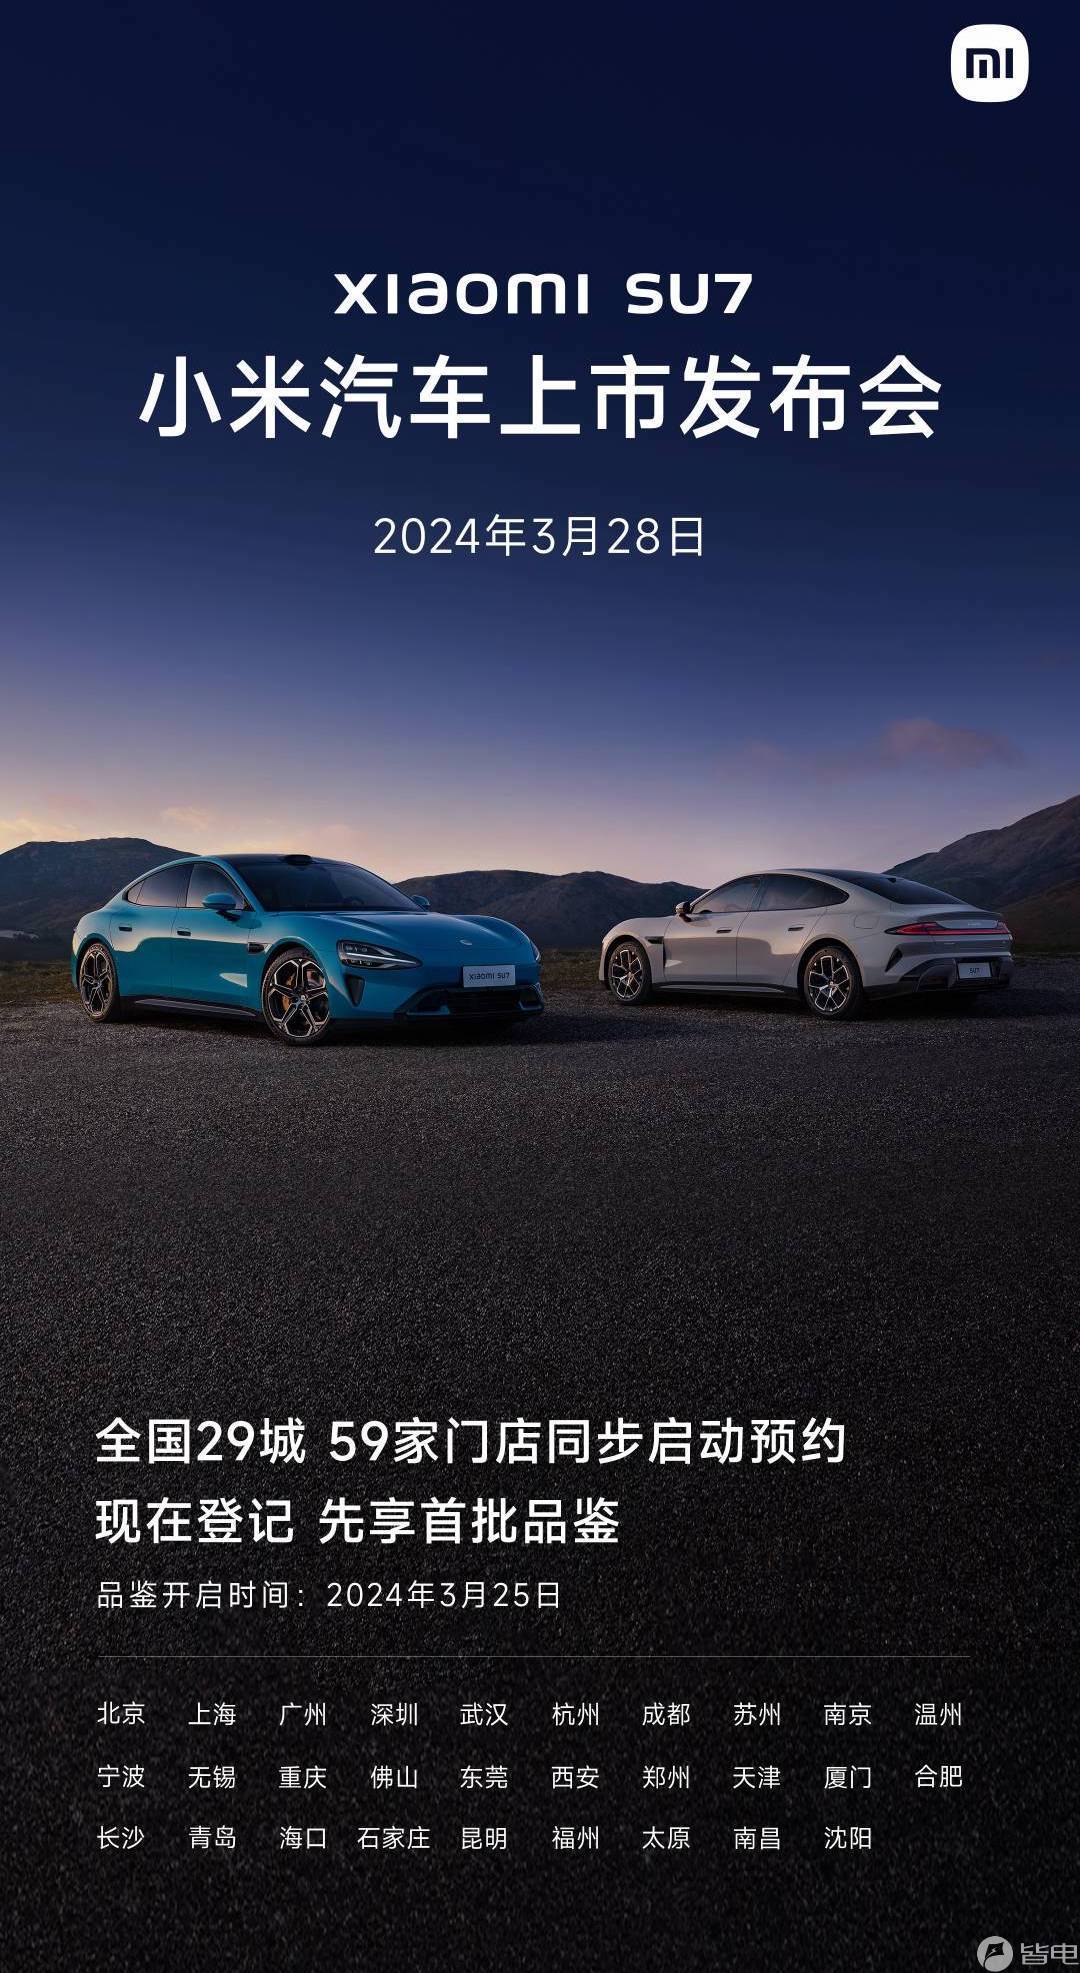 Xiaomi Car Launch